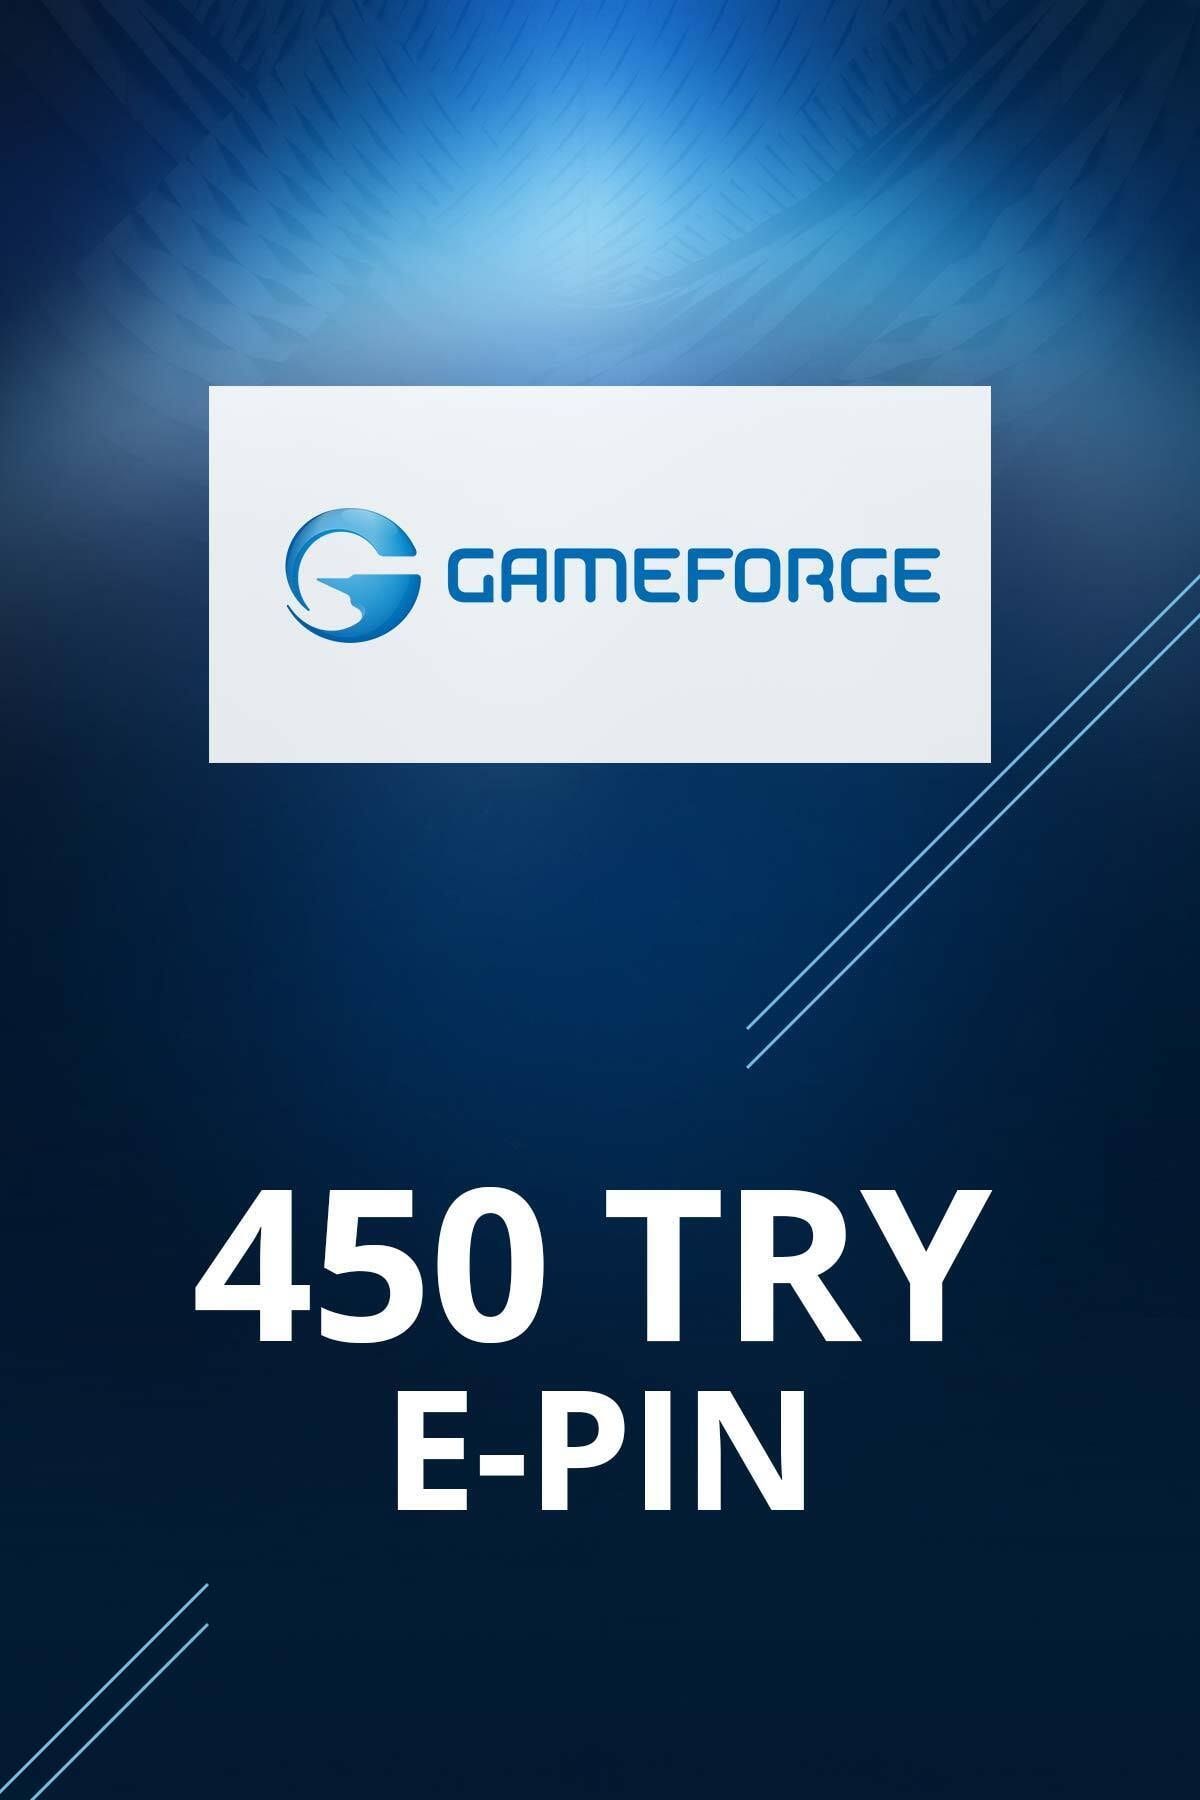 Gameforge 300 TL E-pin